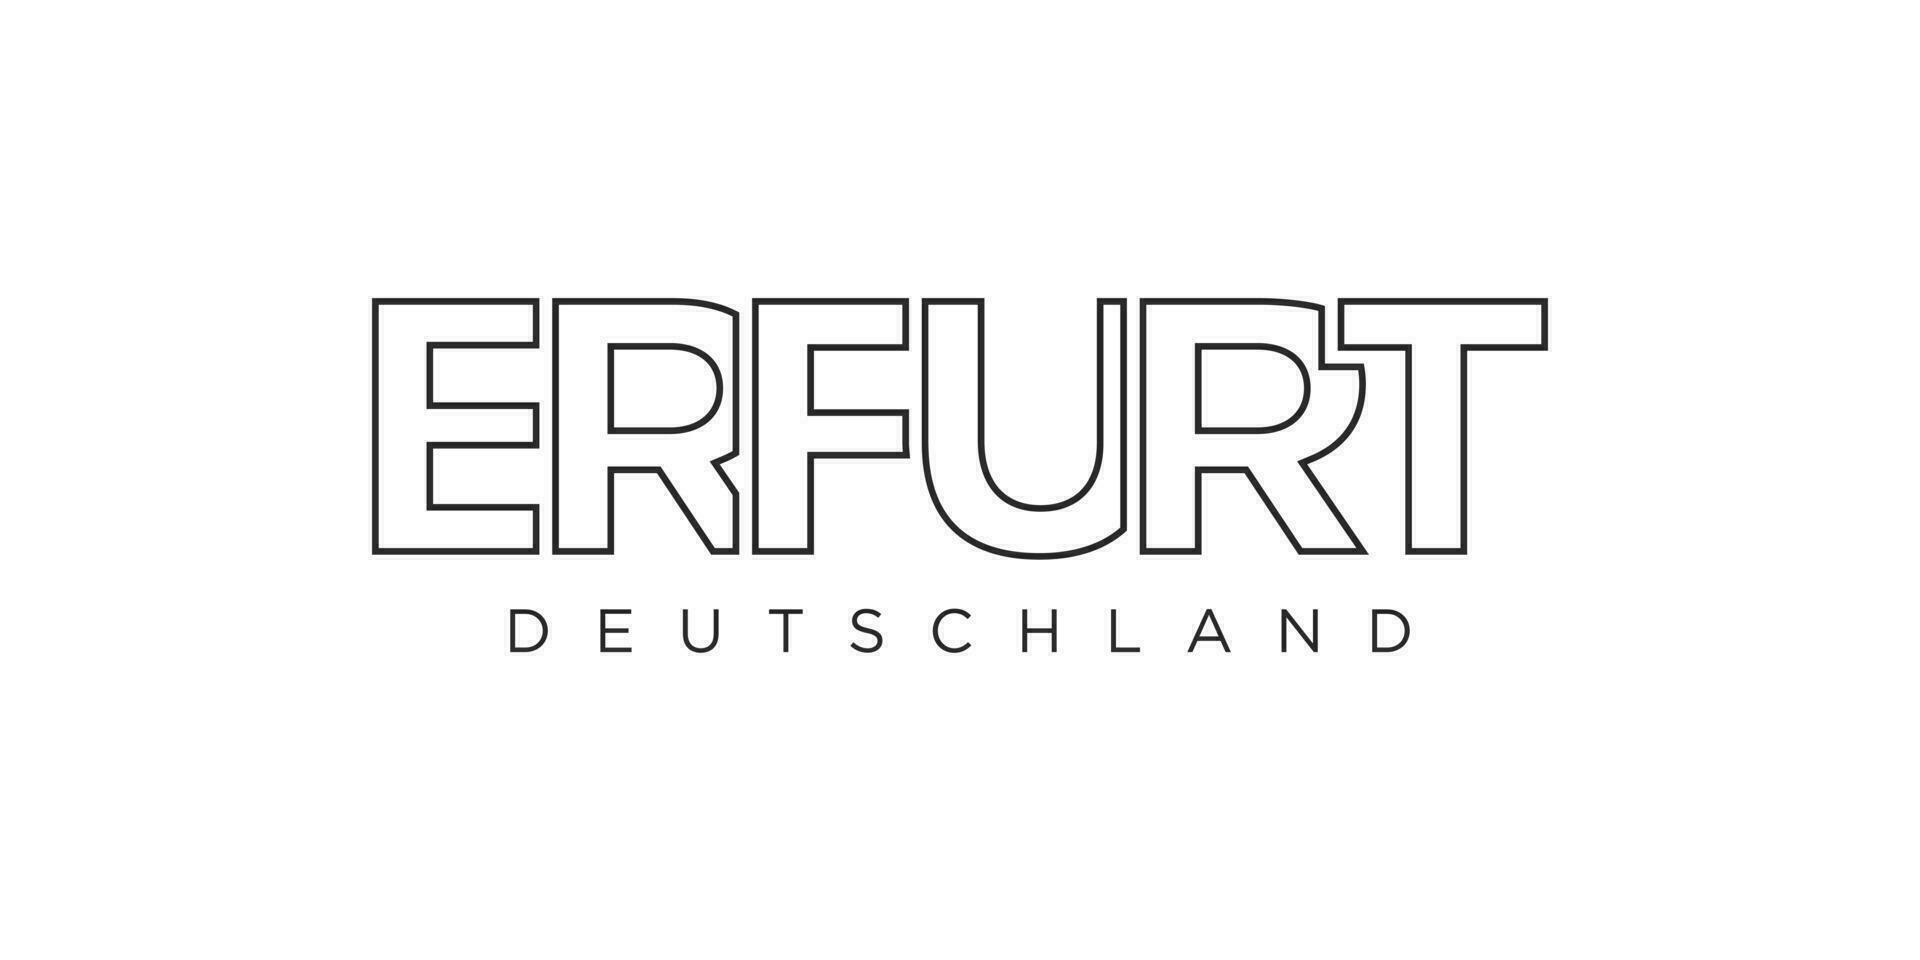 Erfurt Deutschland, modern und kreativ Vektor Illustration Design mit das Stadt von Deutschland wie ein Grafik Symbol und Text Element, einstellen gegen ein Weiß Hintergrund, ist perfekt zum Reise Banner